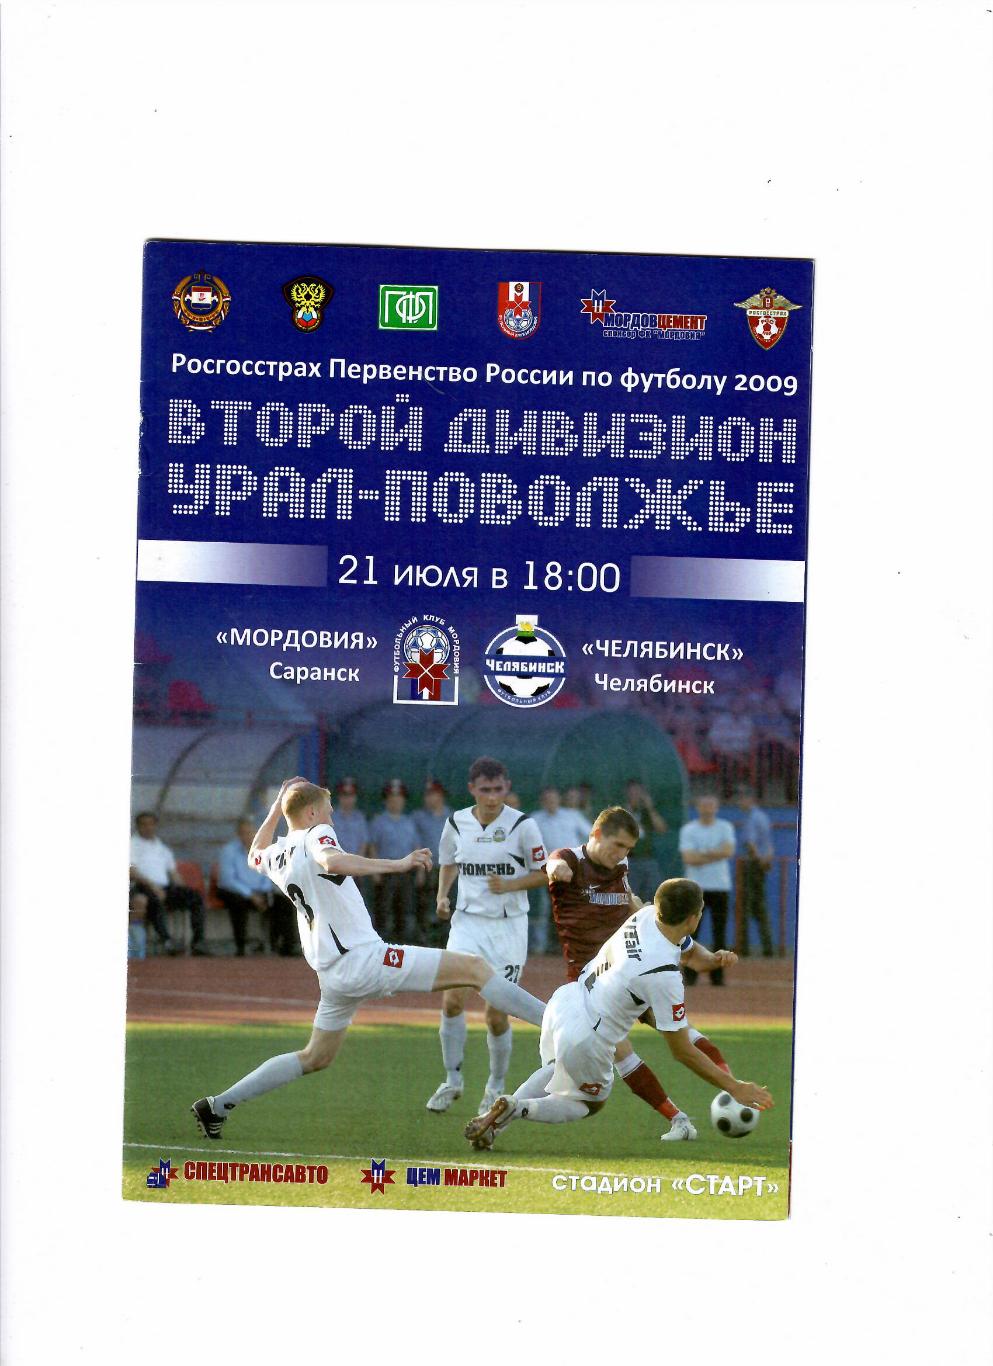 Мордовия Саранск-Челябинск 2009